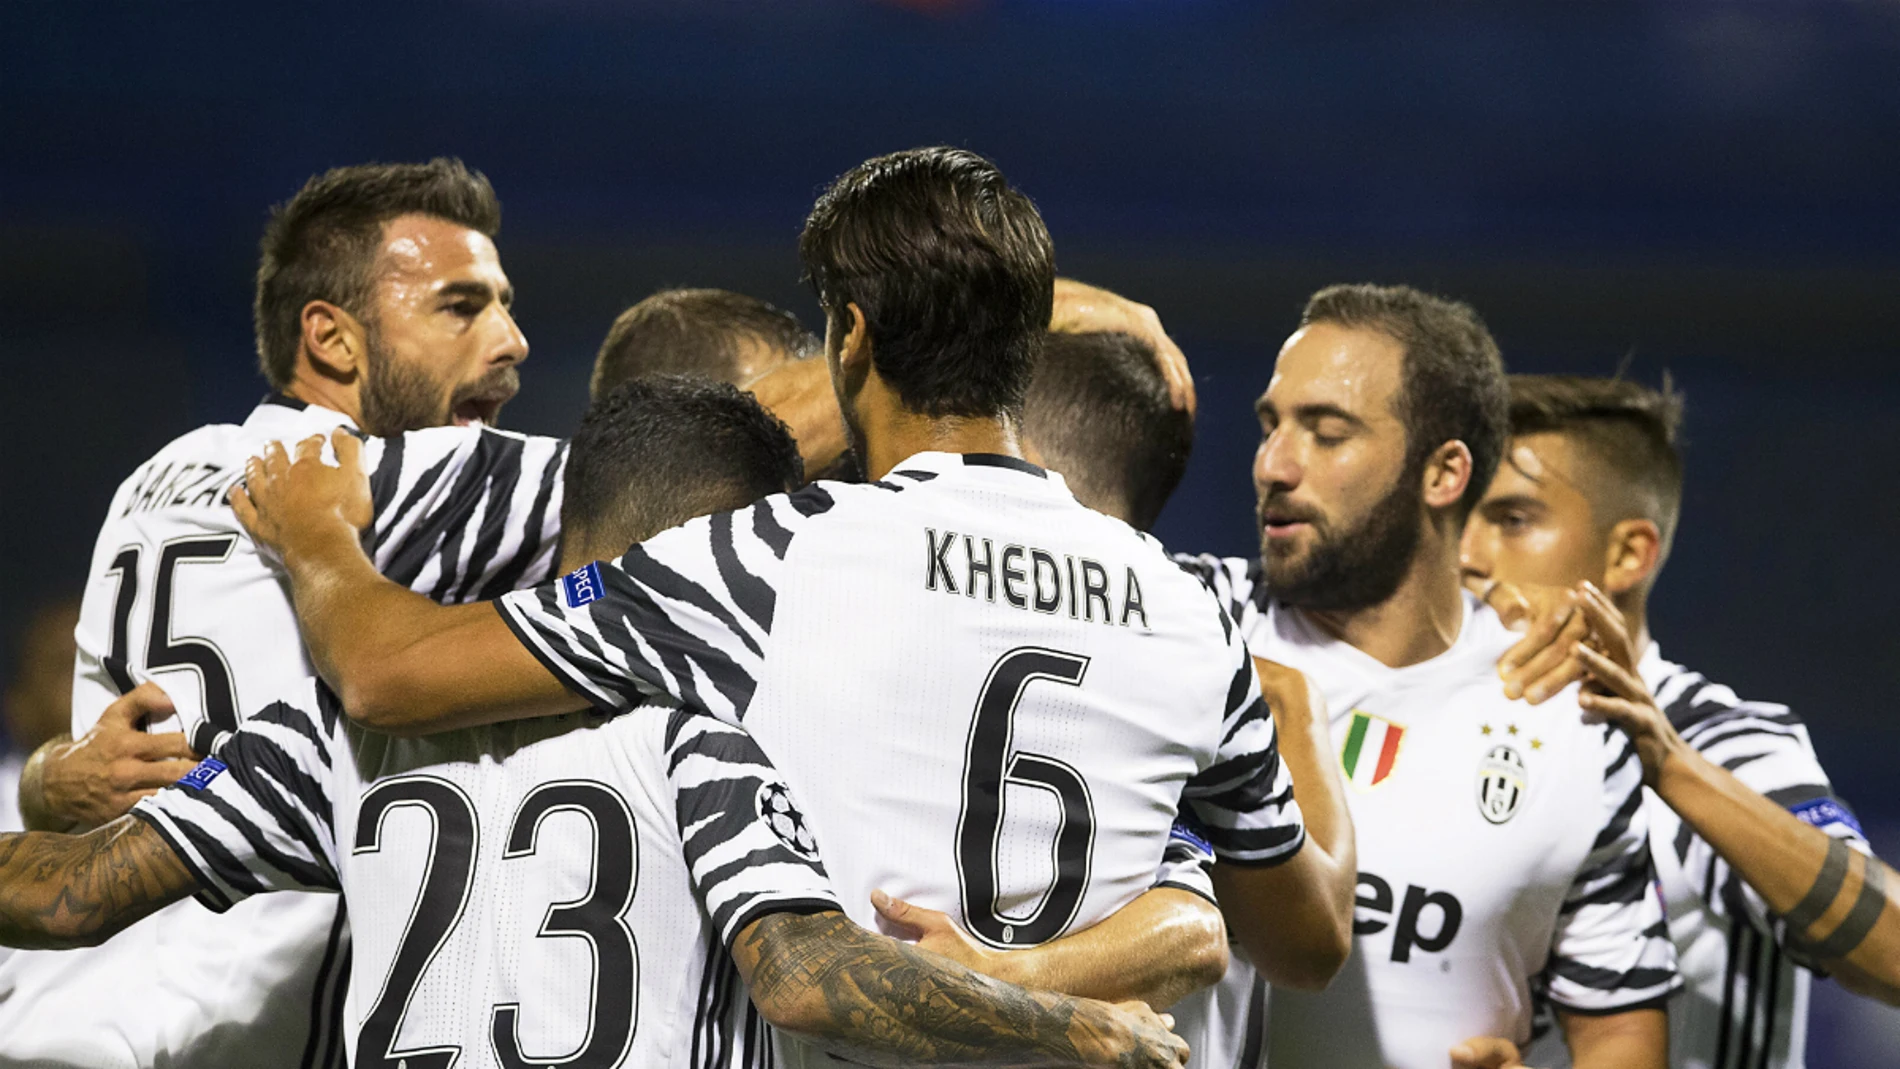 La Juventus celebra un gol